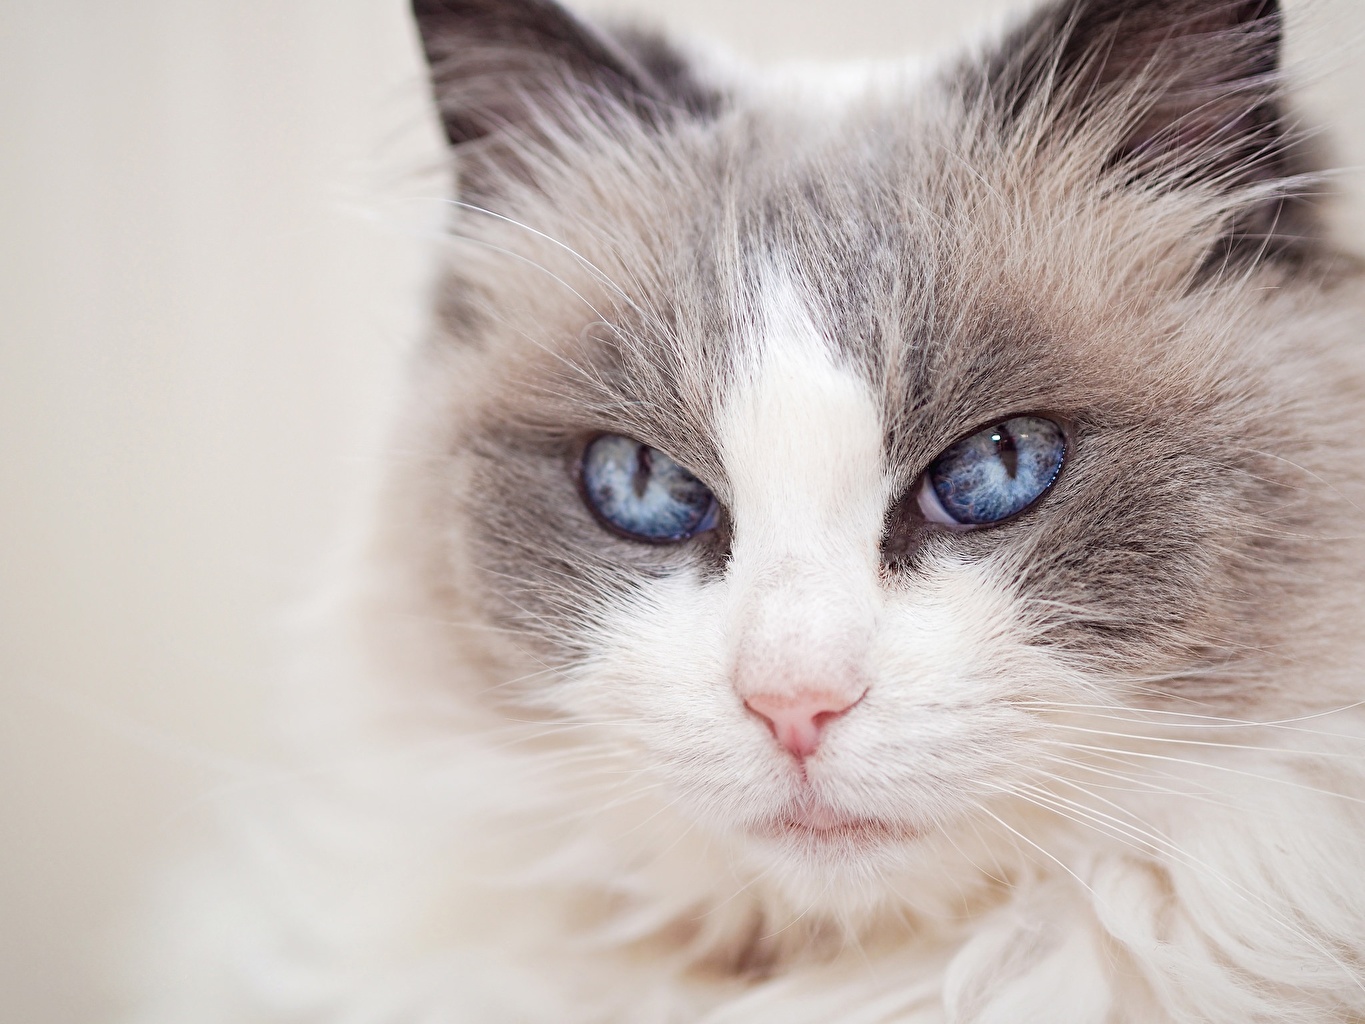 Mèo Ragdoll có ngoại hình dễ thương nên được nhiều người chọn nuôi